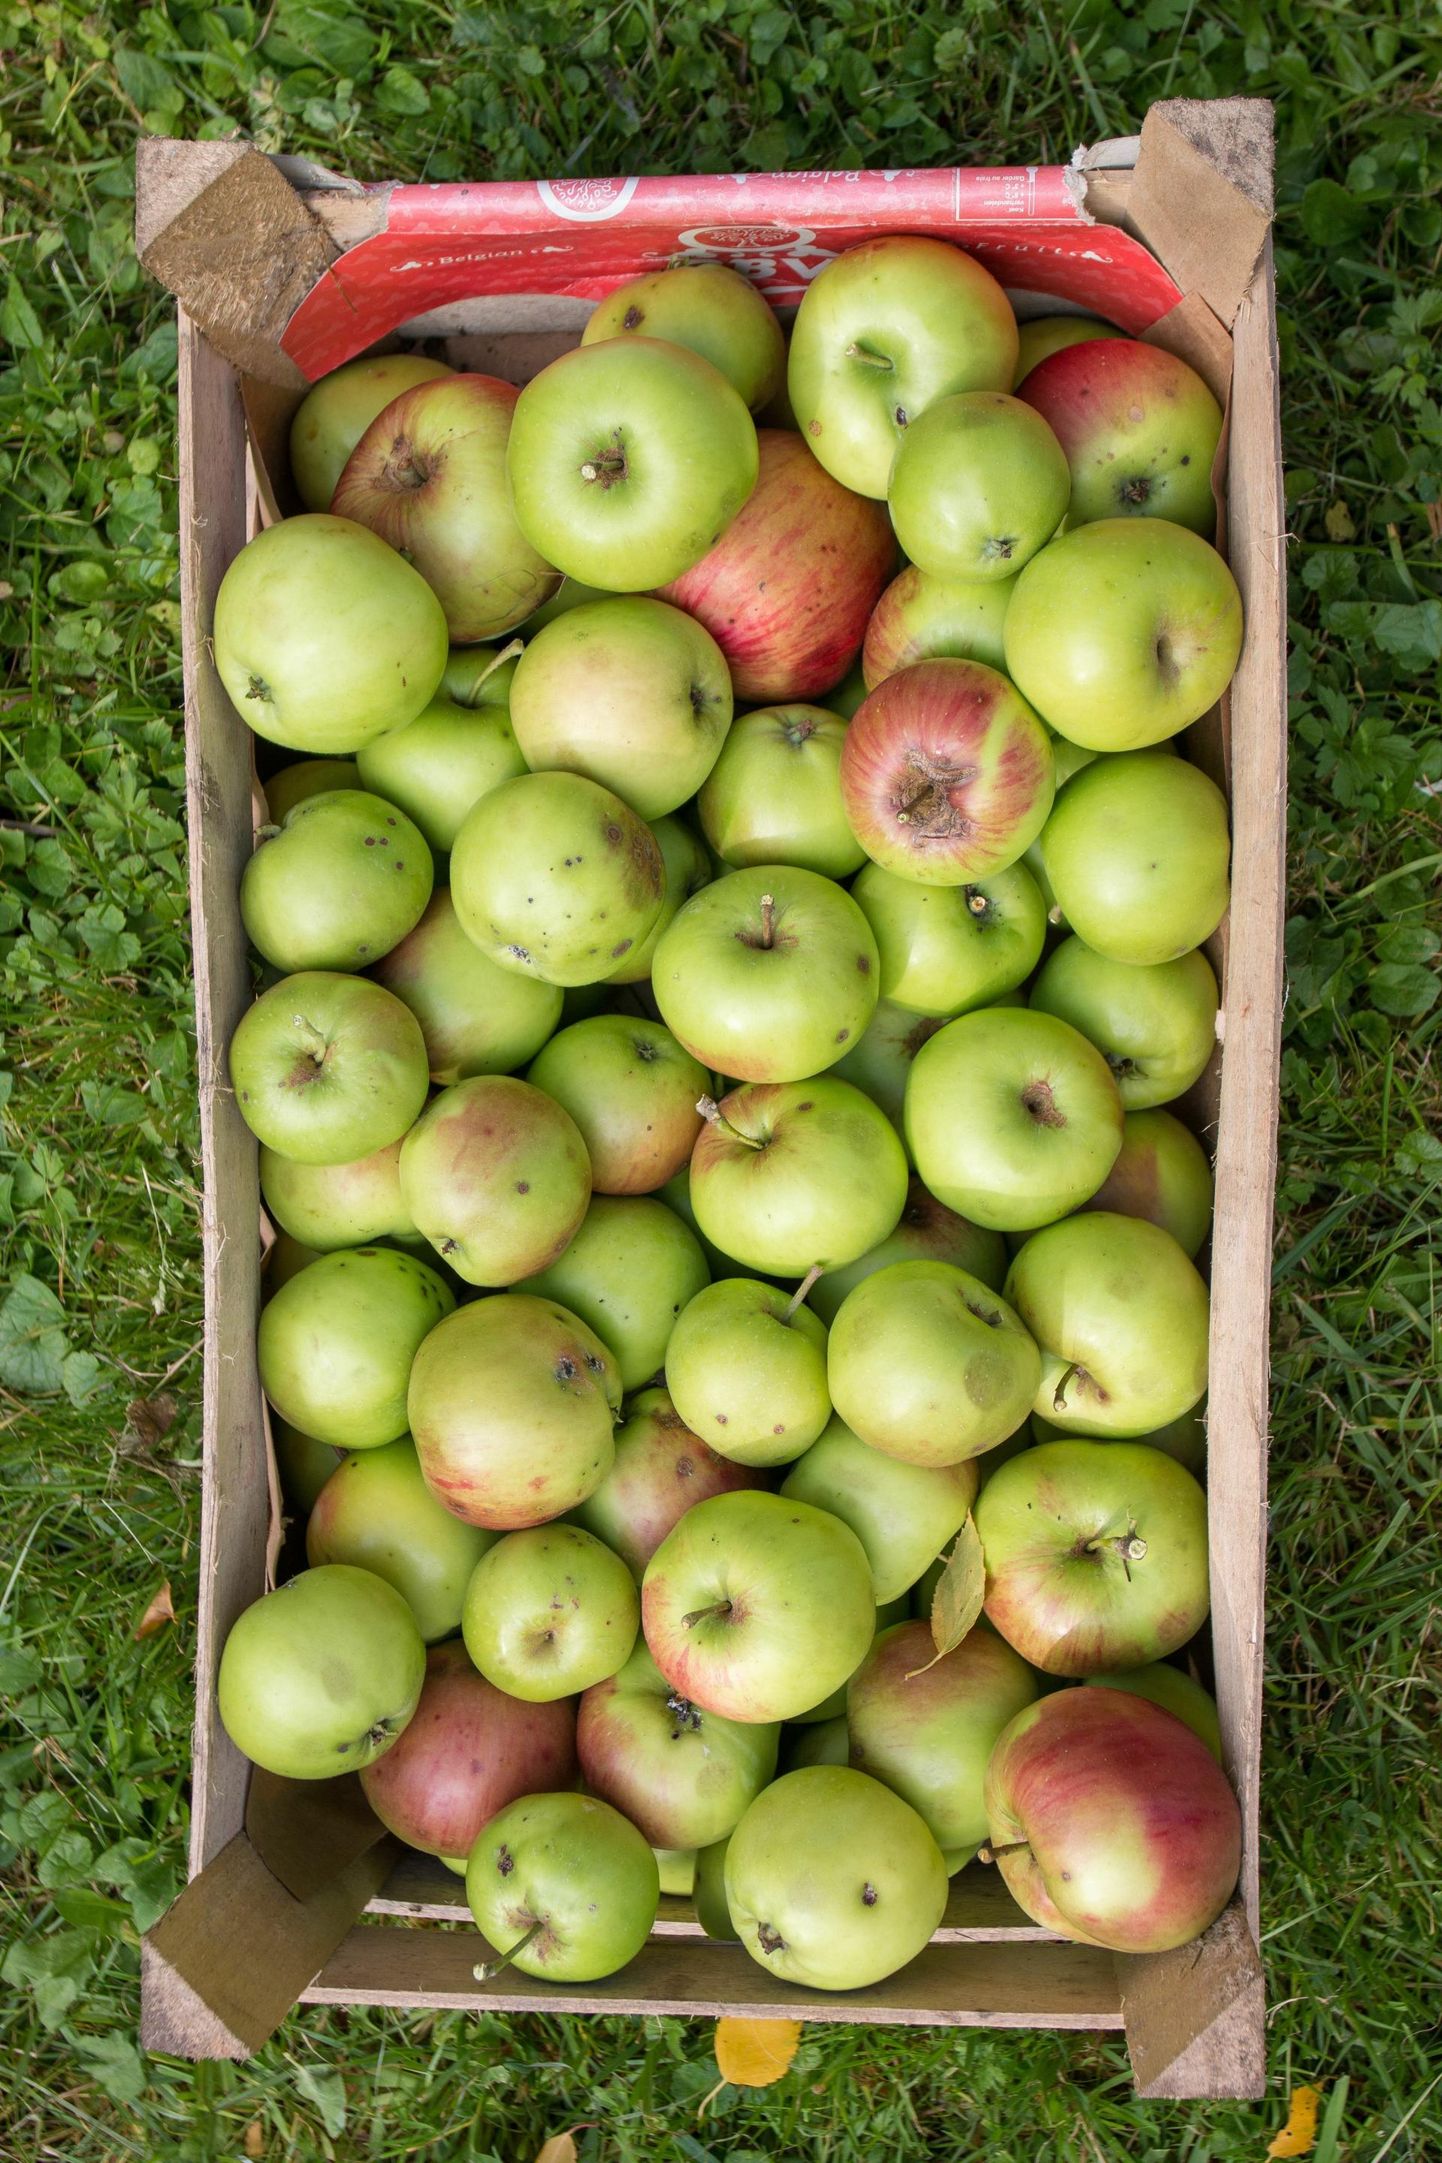 Suve lõpul käikulastud õunakaart ootab linlaste kaasabi, et üles märkida kõik kohad, kus õunu jagatakse. 